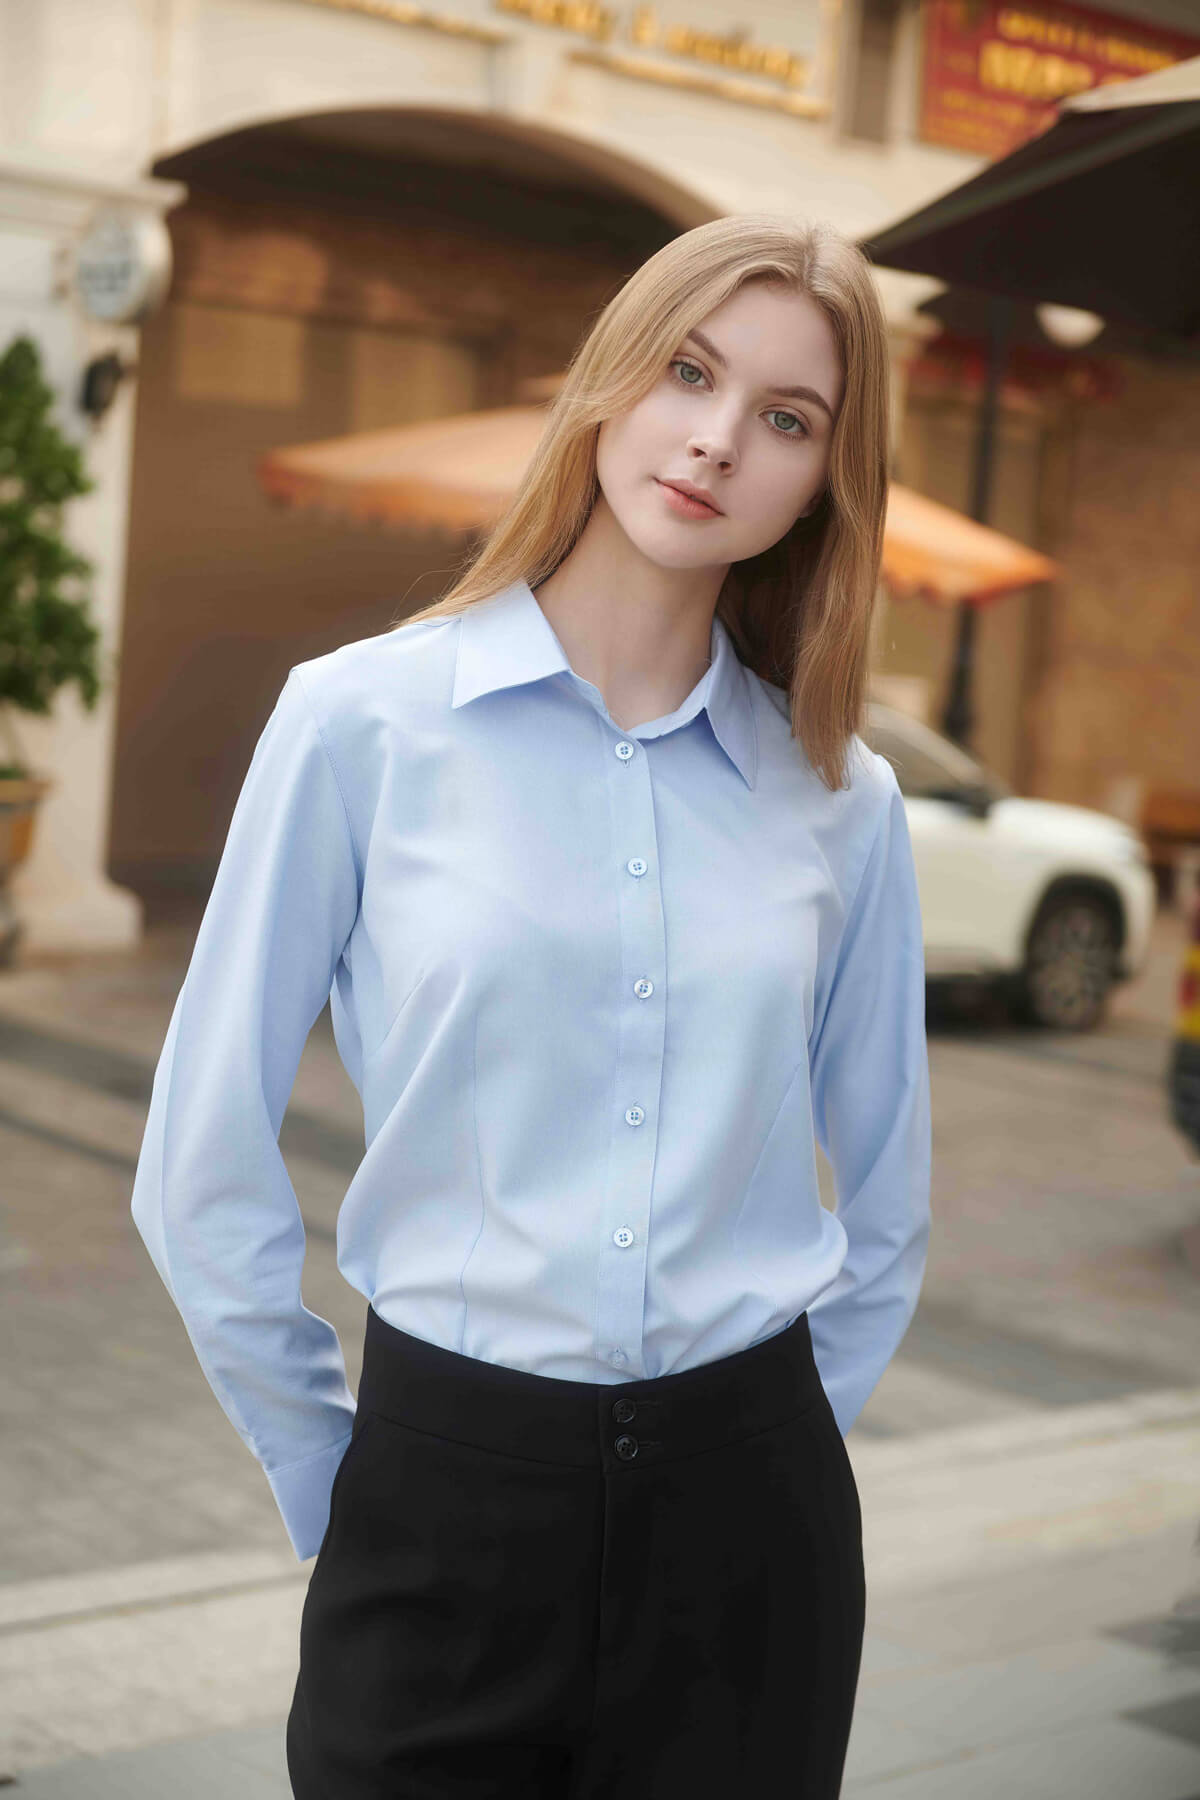 Coffee Dress Shirt for Women - Light Blue